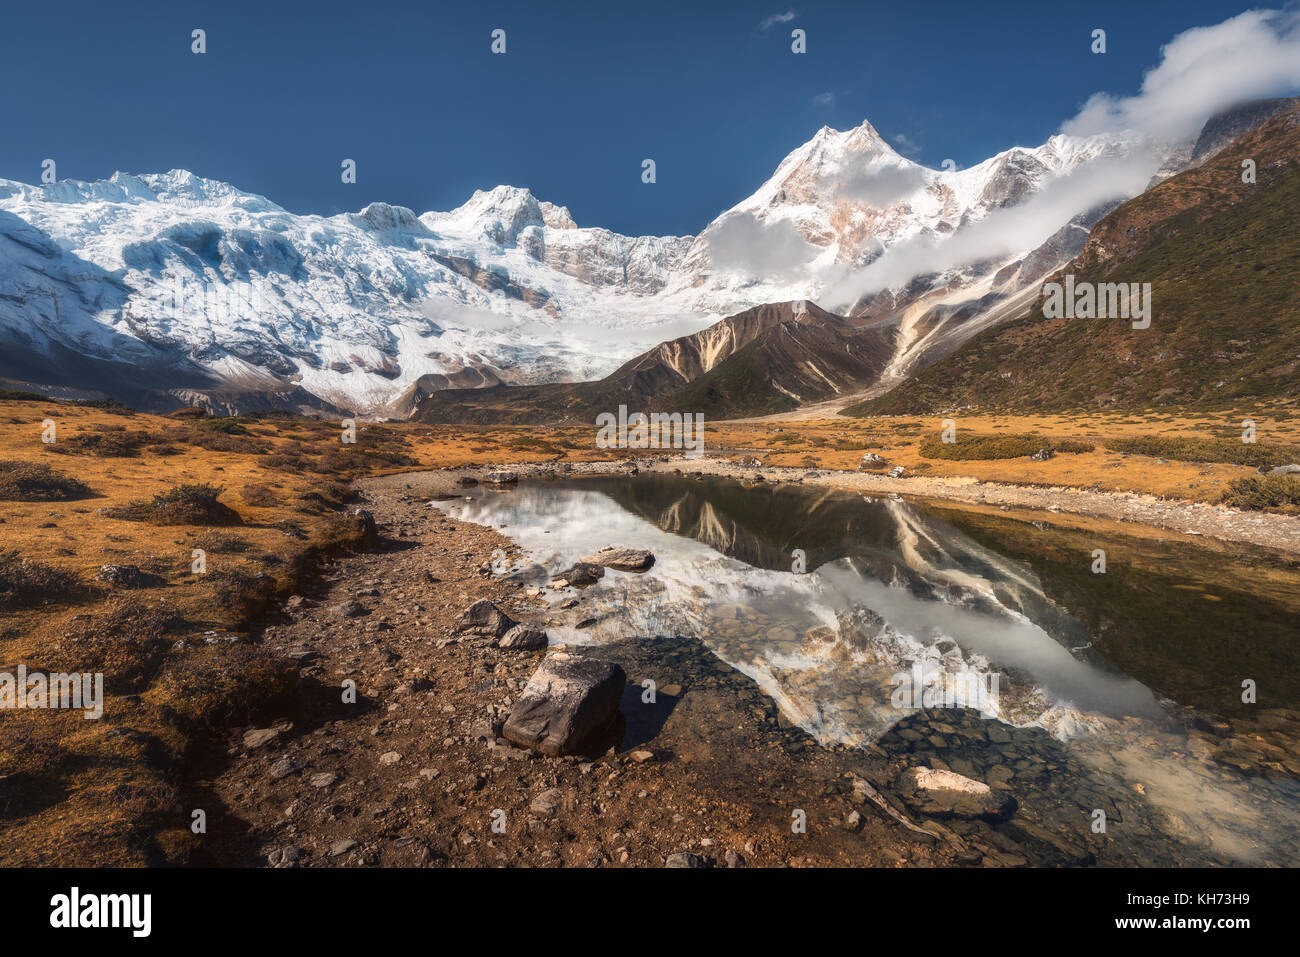 Hermosa vista con altas rocas con picos cubiertos de nieve, piedras en Mountain Lake, reflejo en el agua, el cielo azul con nubes en el amanecer. Nepal. Increíble Foto de stock